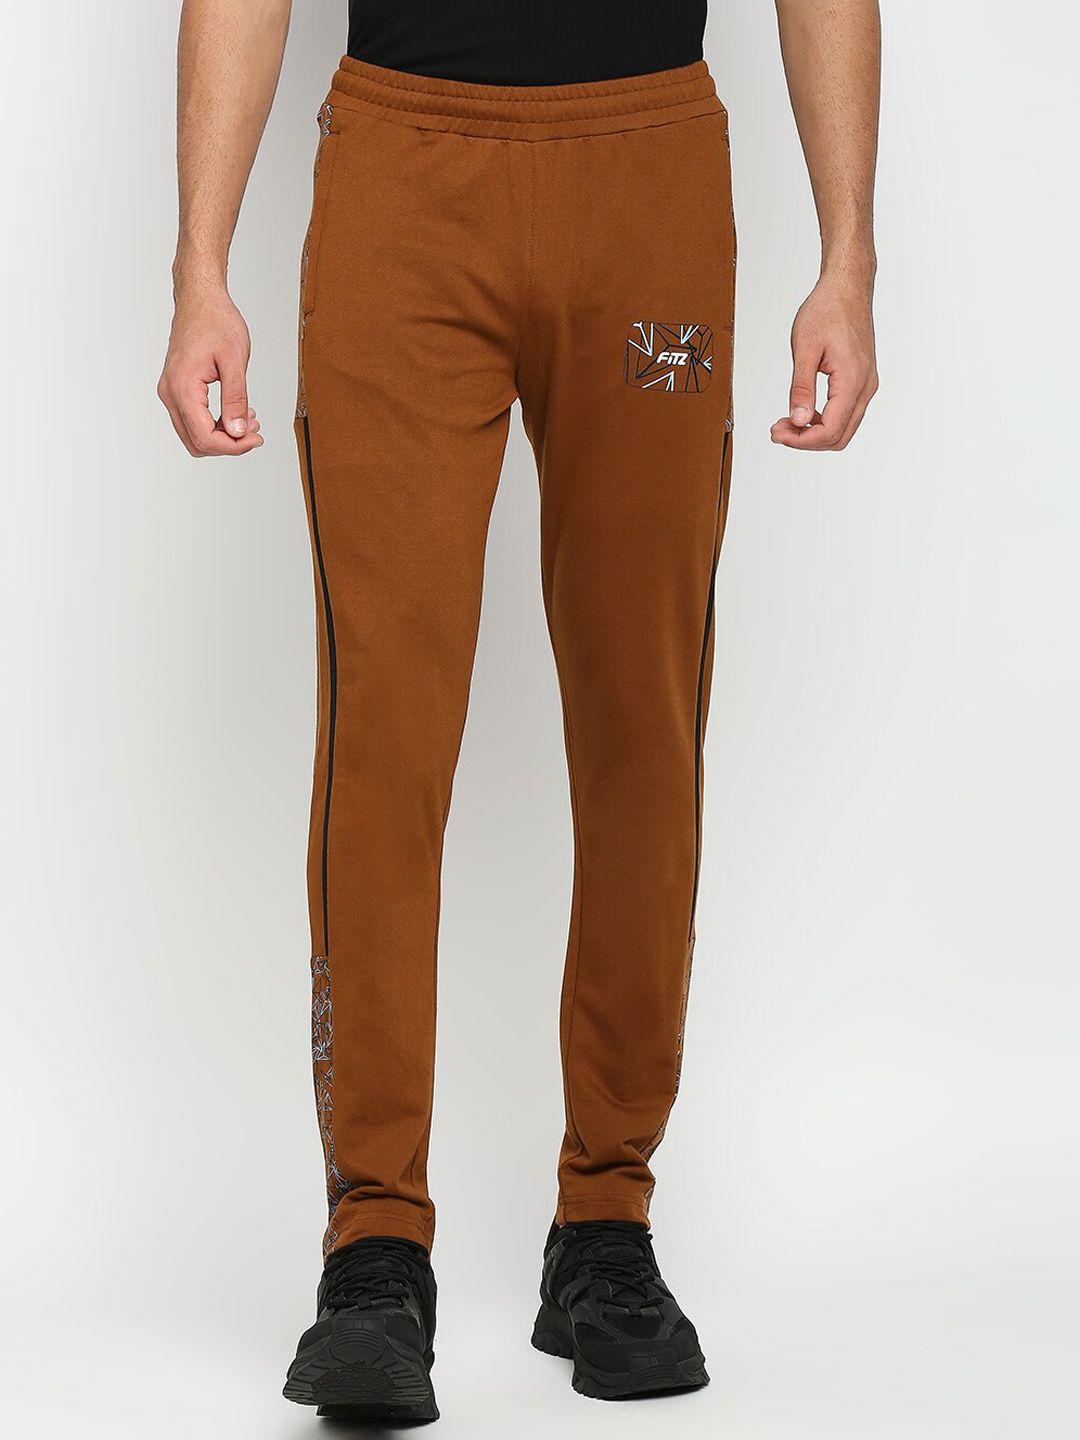 fitz-men-camel-brown-printed-anti-odour-slim-fit-track-pant